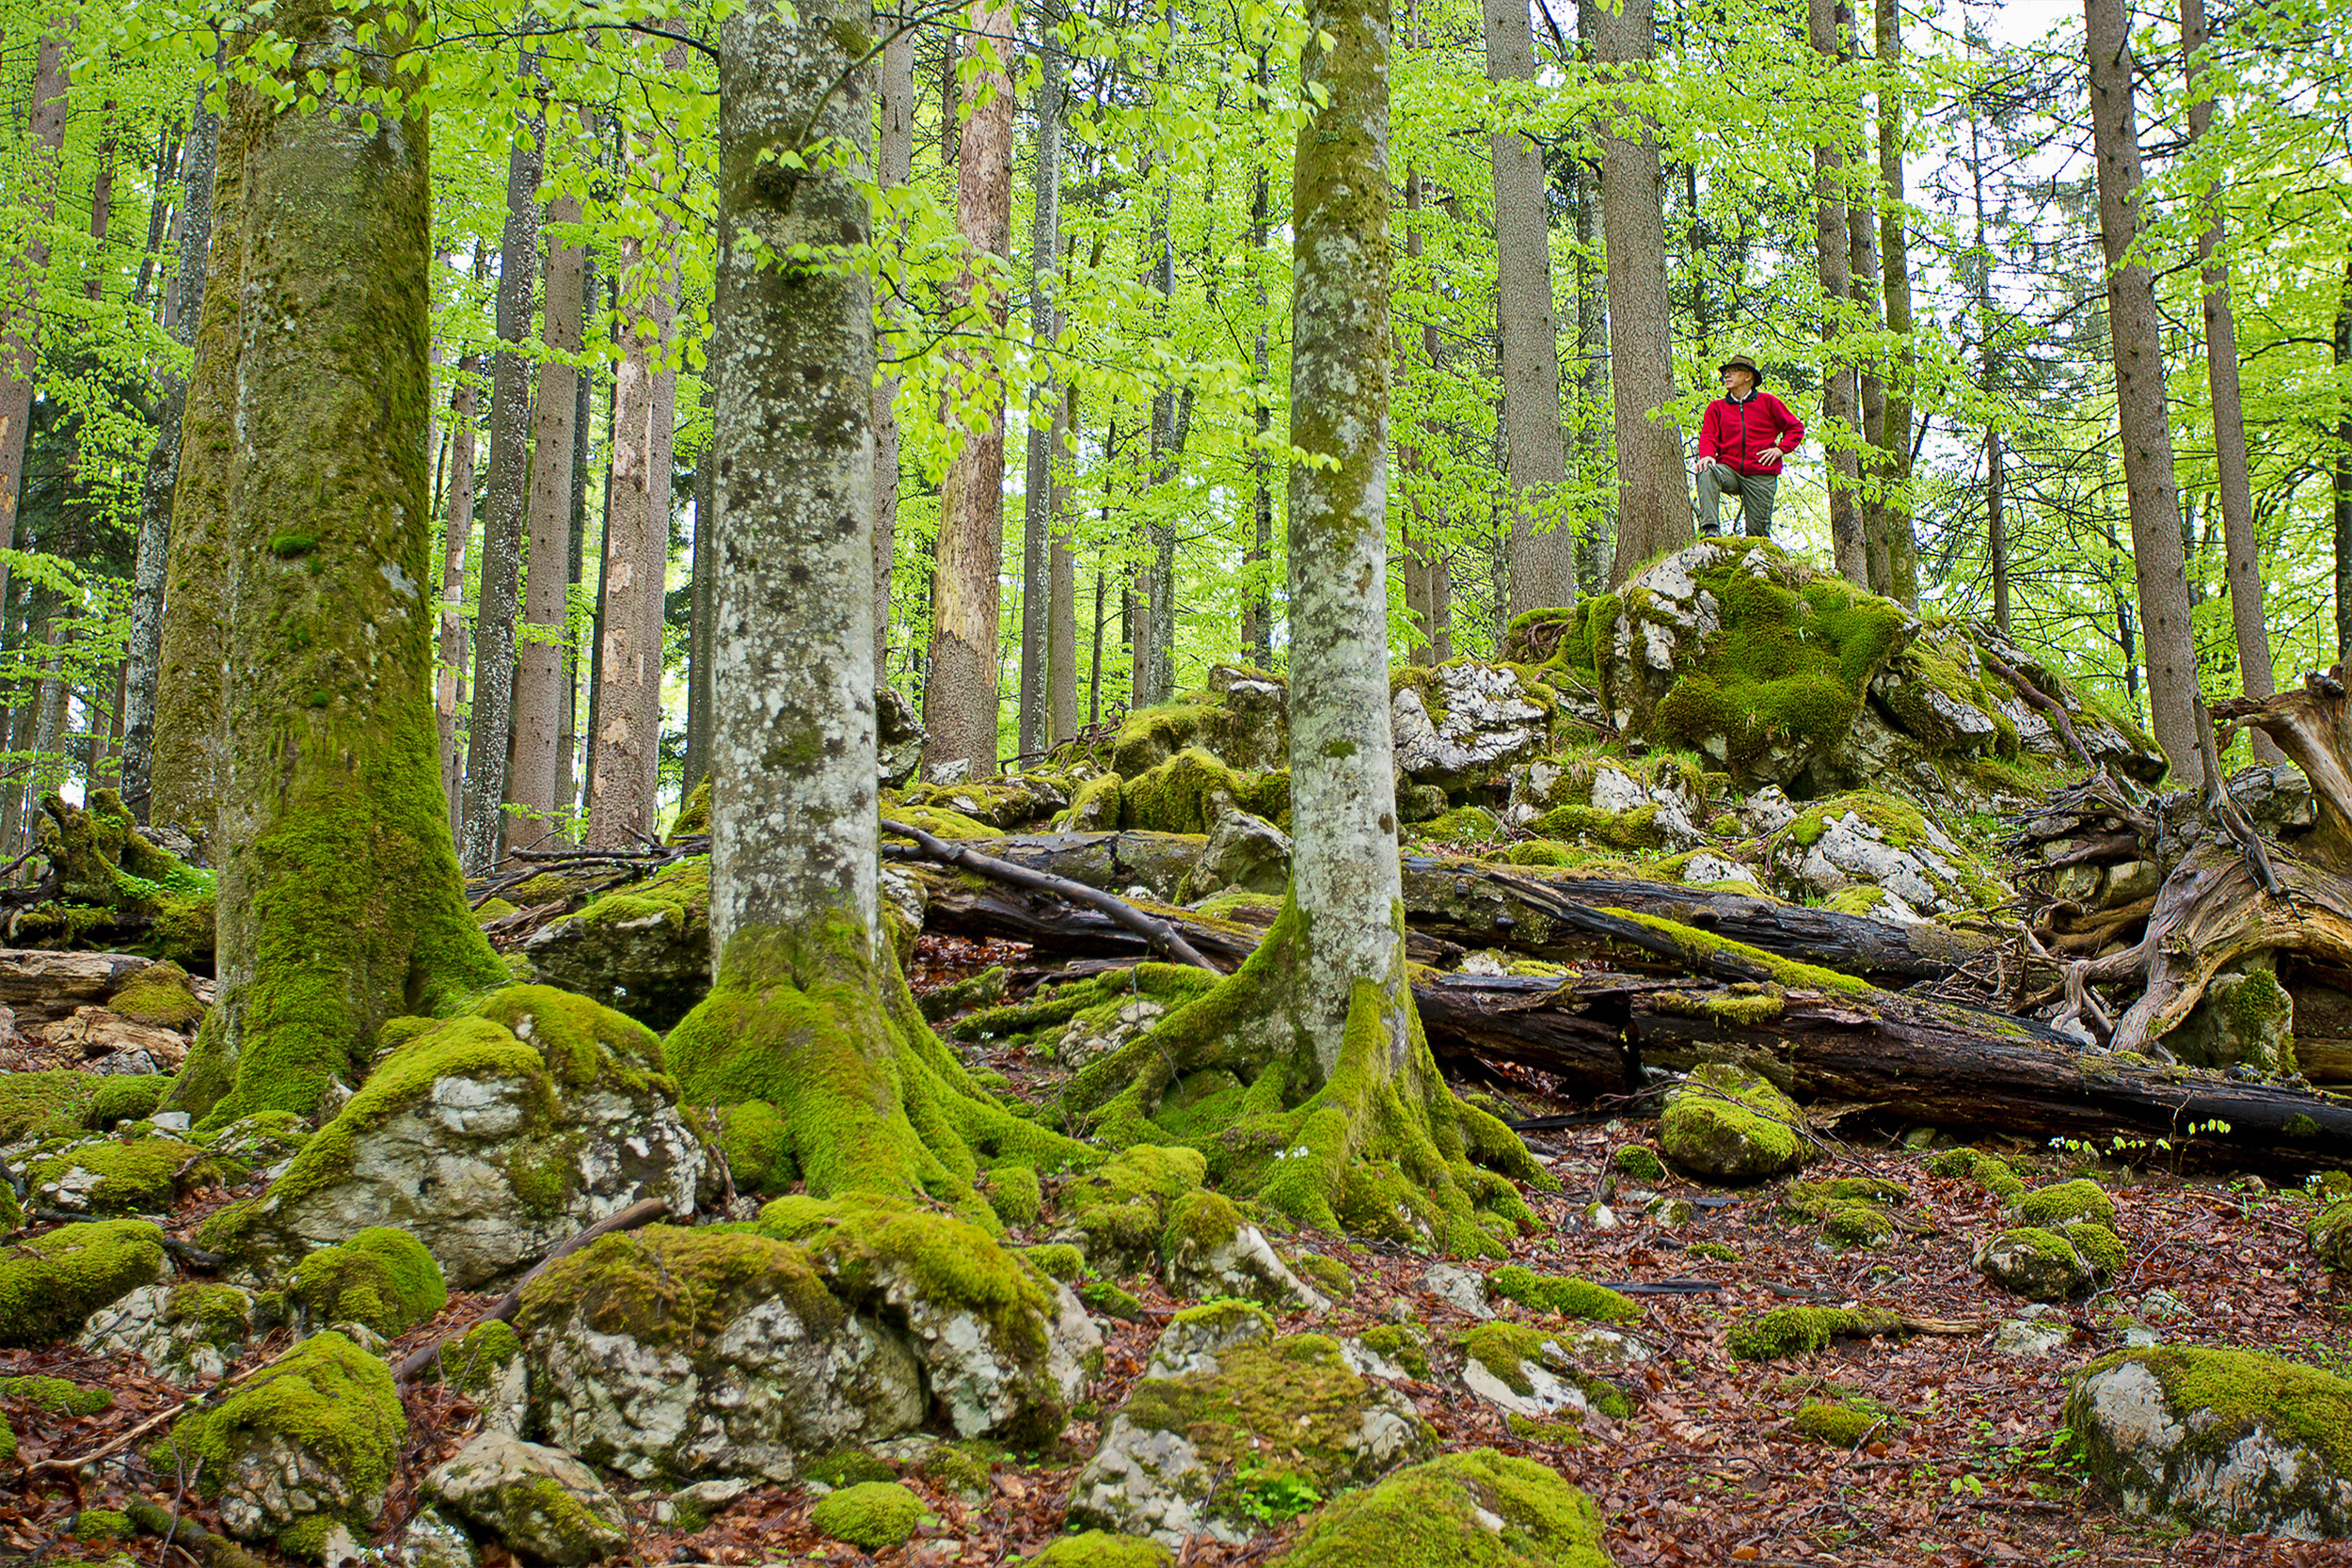 Turista stojí na skále v bukovém lese a dívá se na čerstvé bukové listí.